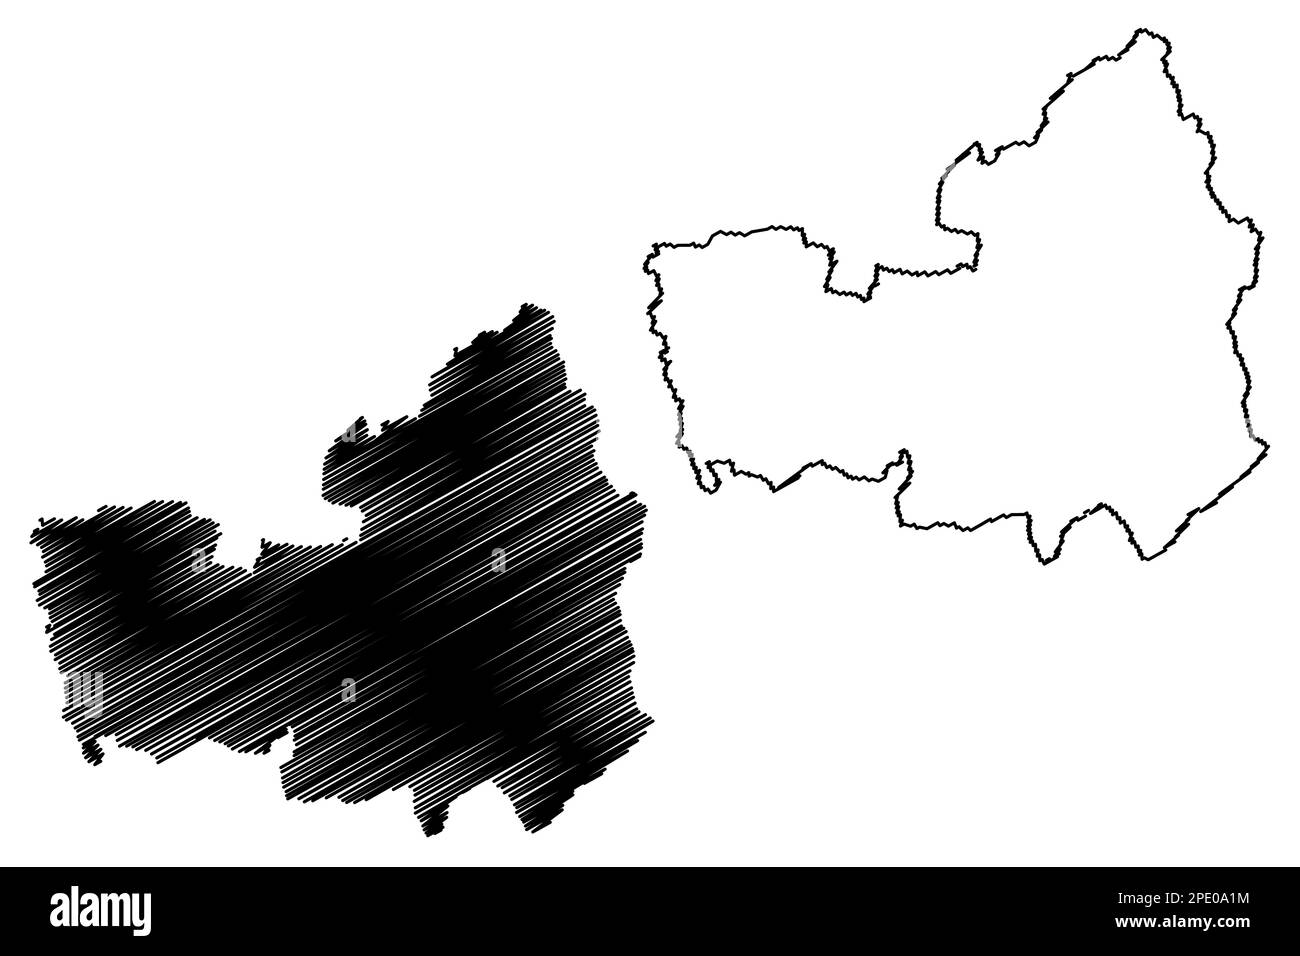 Chorley carte du district non métropolitain de Borough (Royaume-Uni de Grande-Bretagne et d'Irlande du Nord, comté cérémonial de Lancashire ou Lancs, Angleterre) Illustration de Vecteur